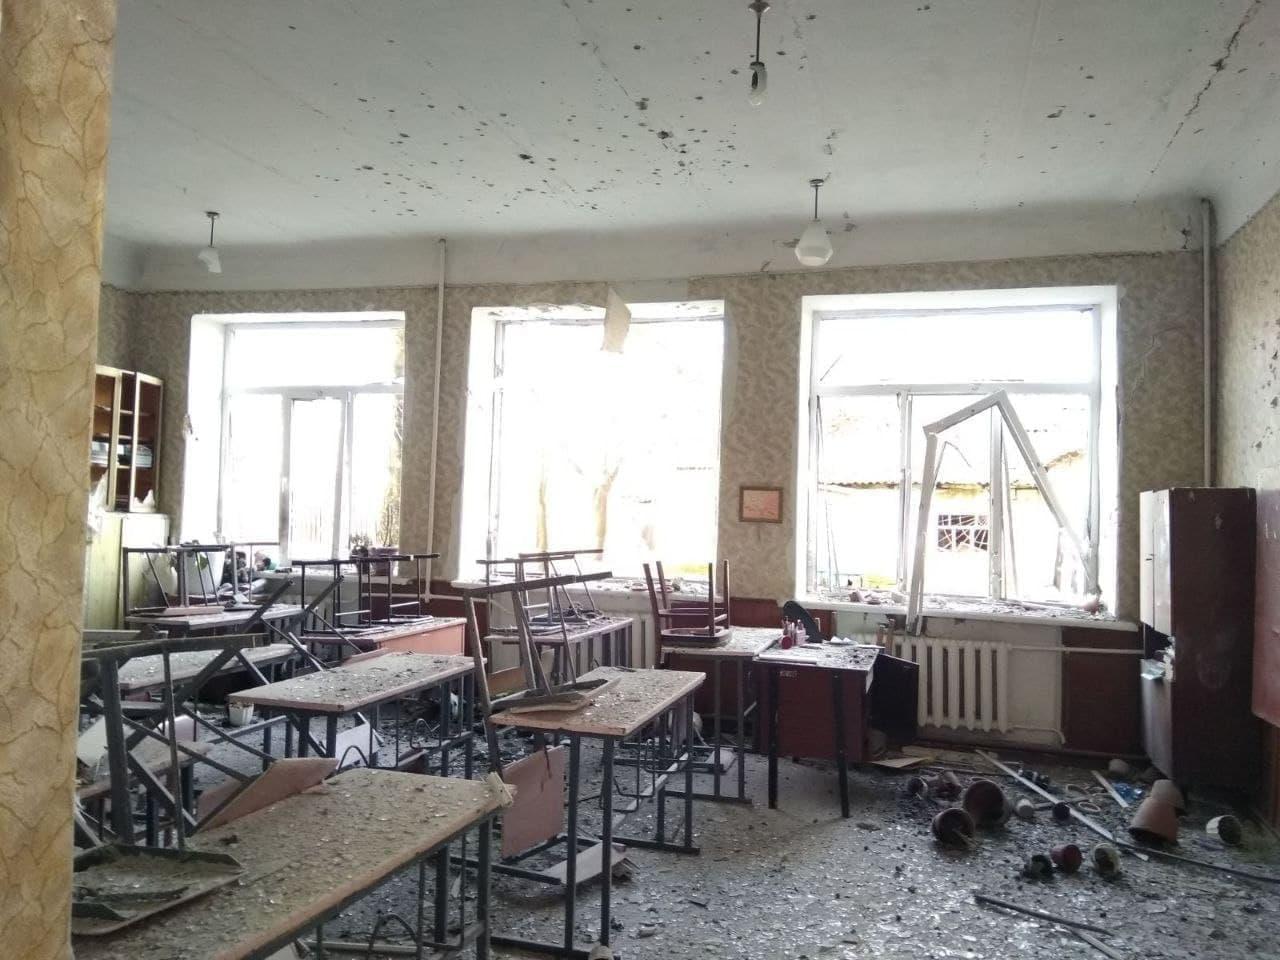 Разрушения внутри класса. Фото © t.me/shot_shot